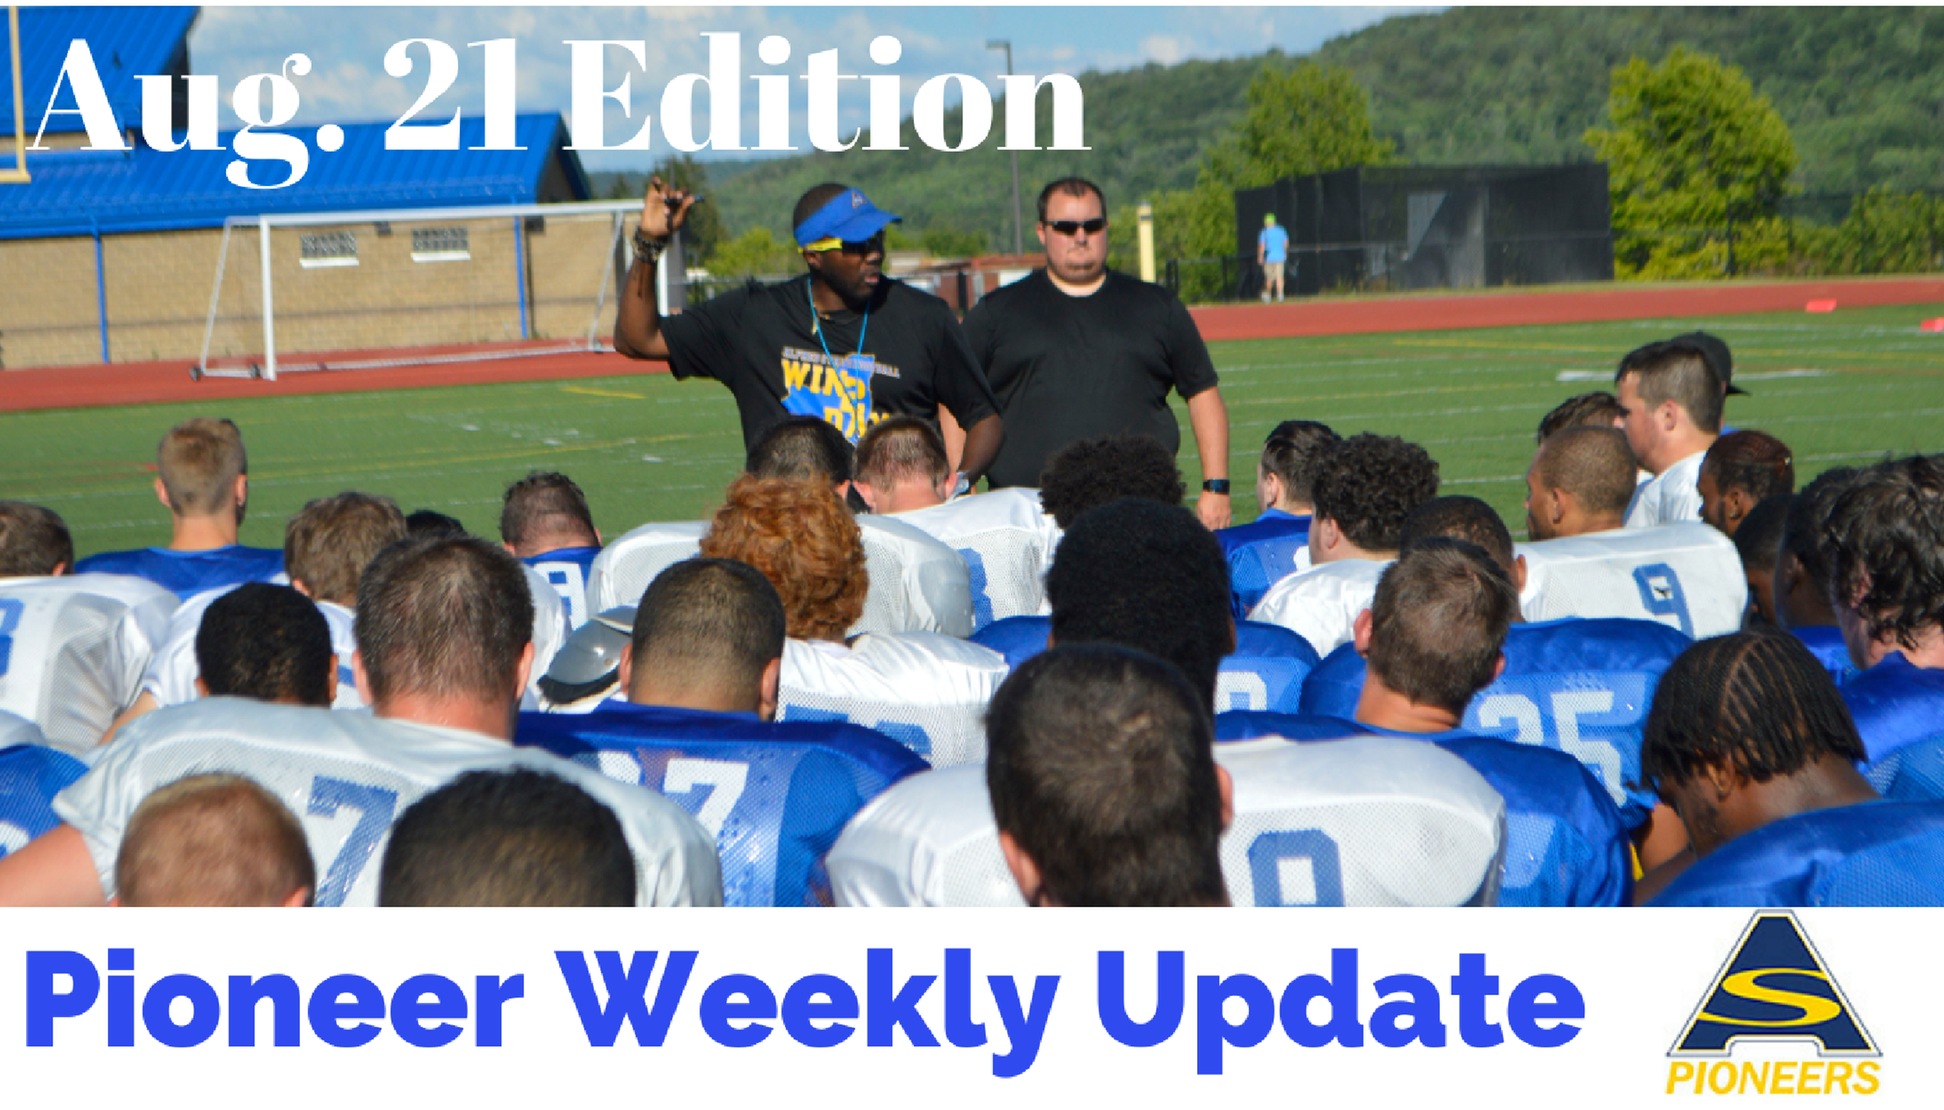 Pioneer Weekly Update: Aug. 21 Edition